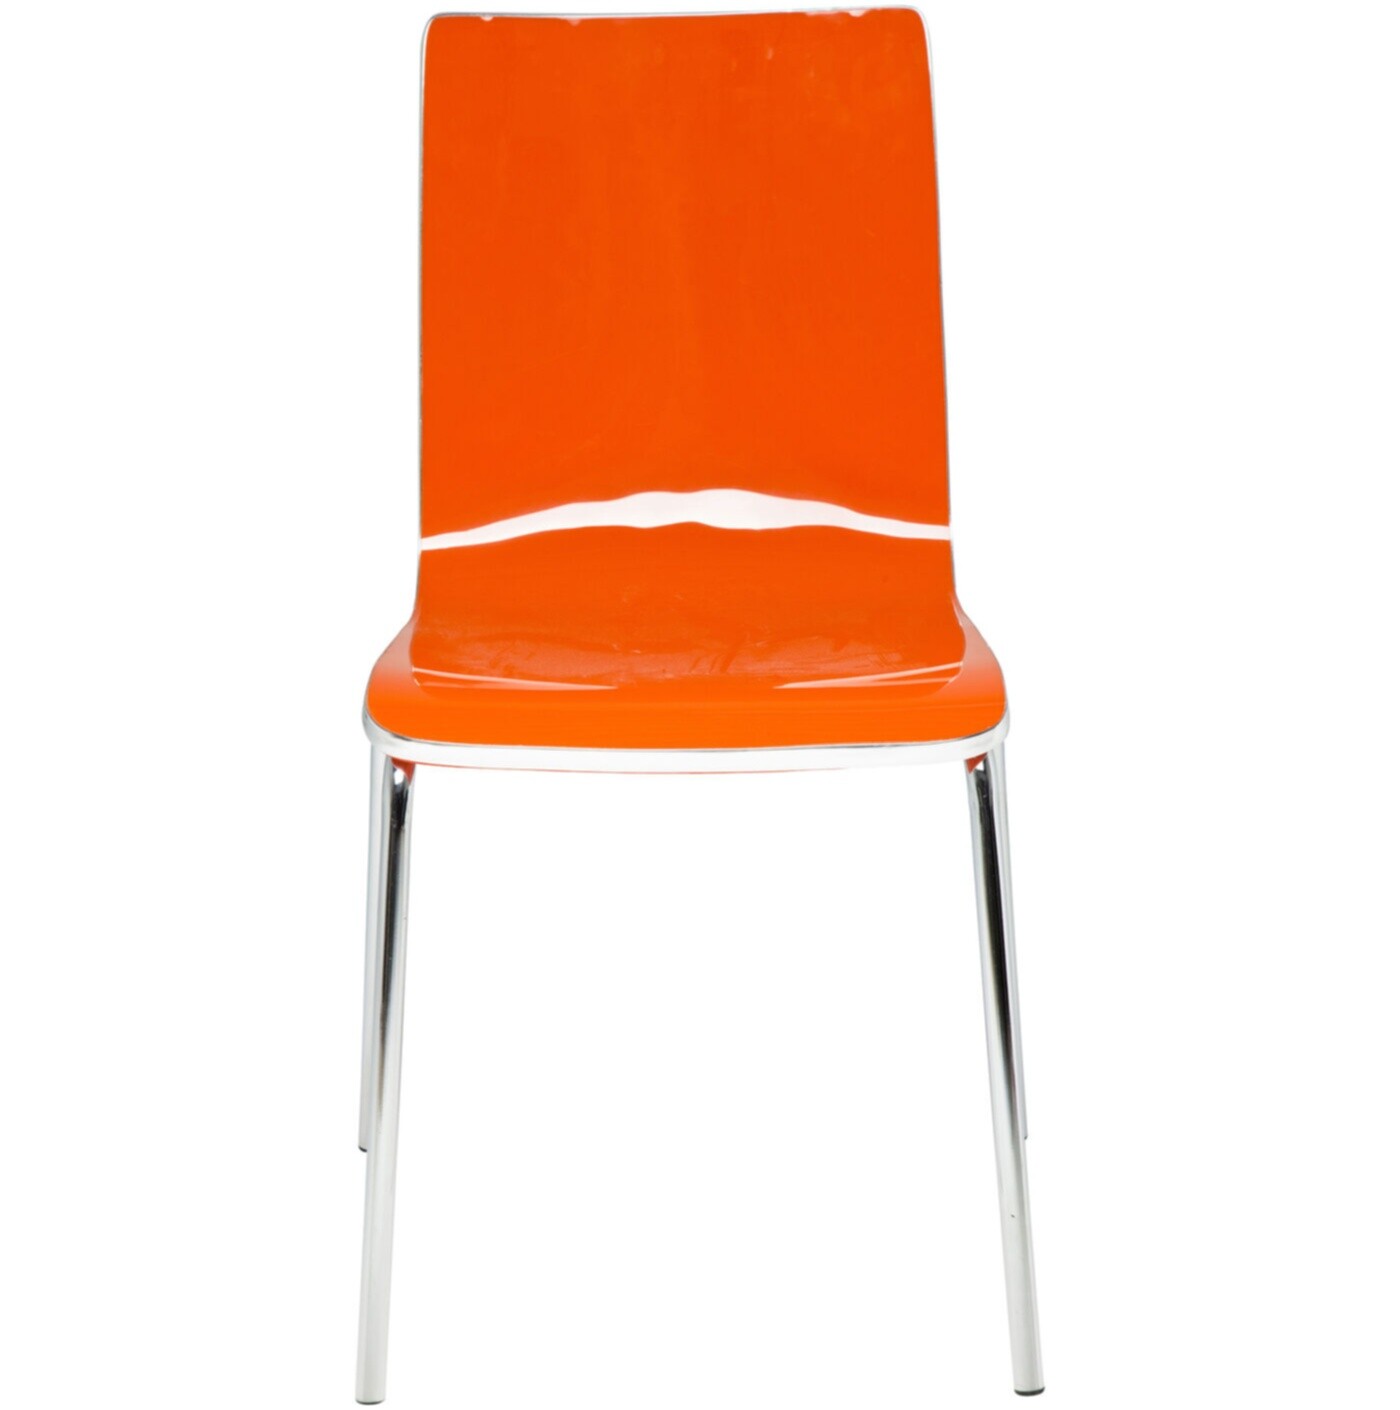 Стул пластиковый оранжевый с металлическими ножками Dimensionale 77686